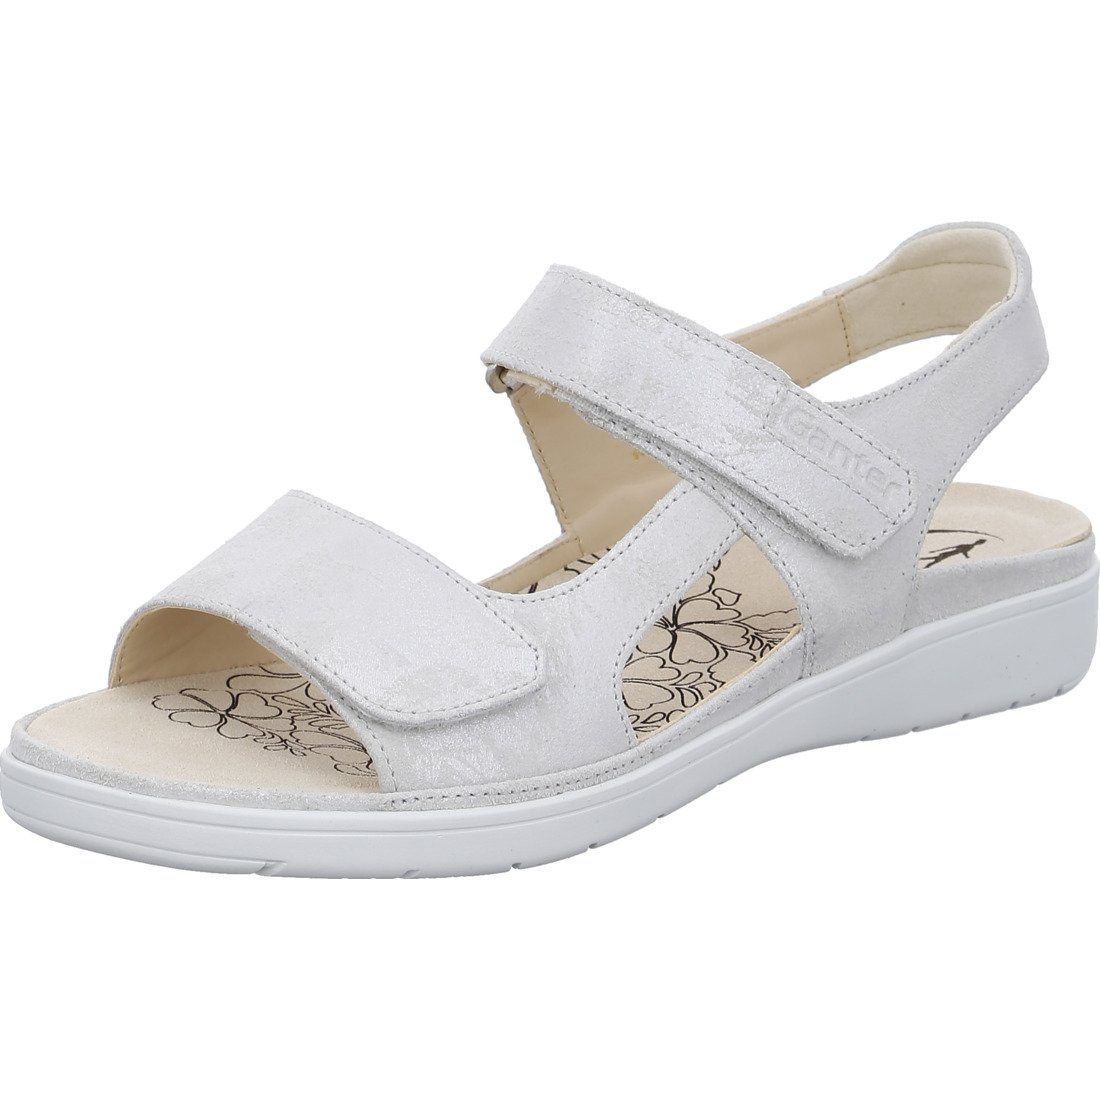 Ganter Ganter Schuhe, Sandalette Gina - Leder Damen Sandalette weiß 048813 | Sandaletten